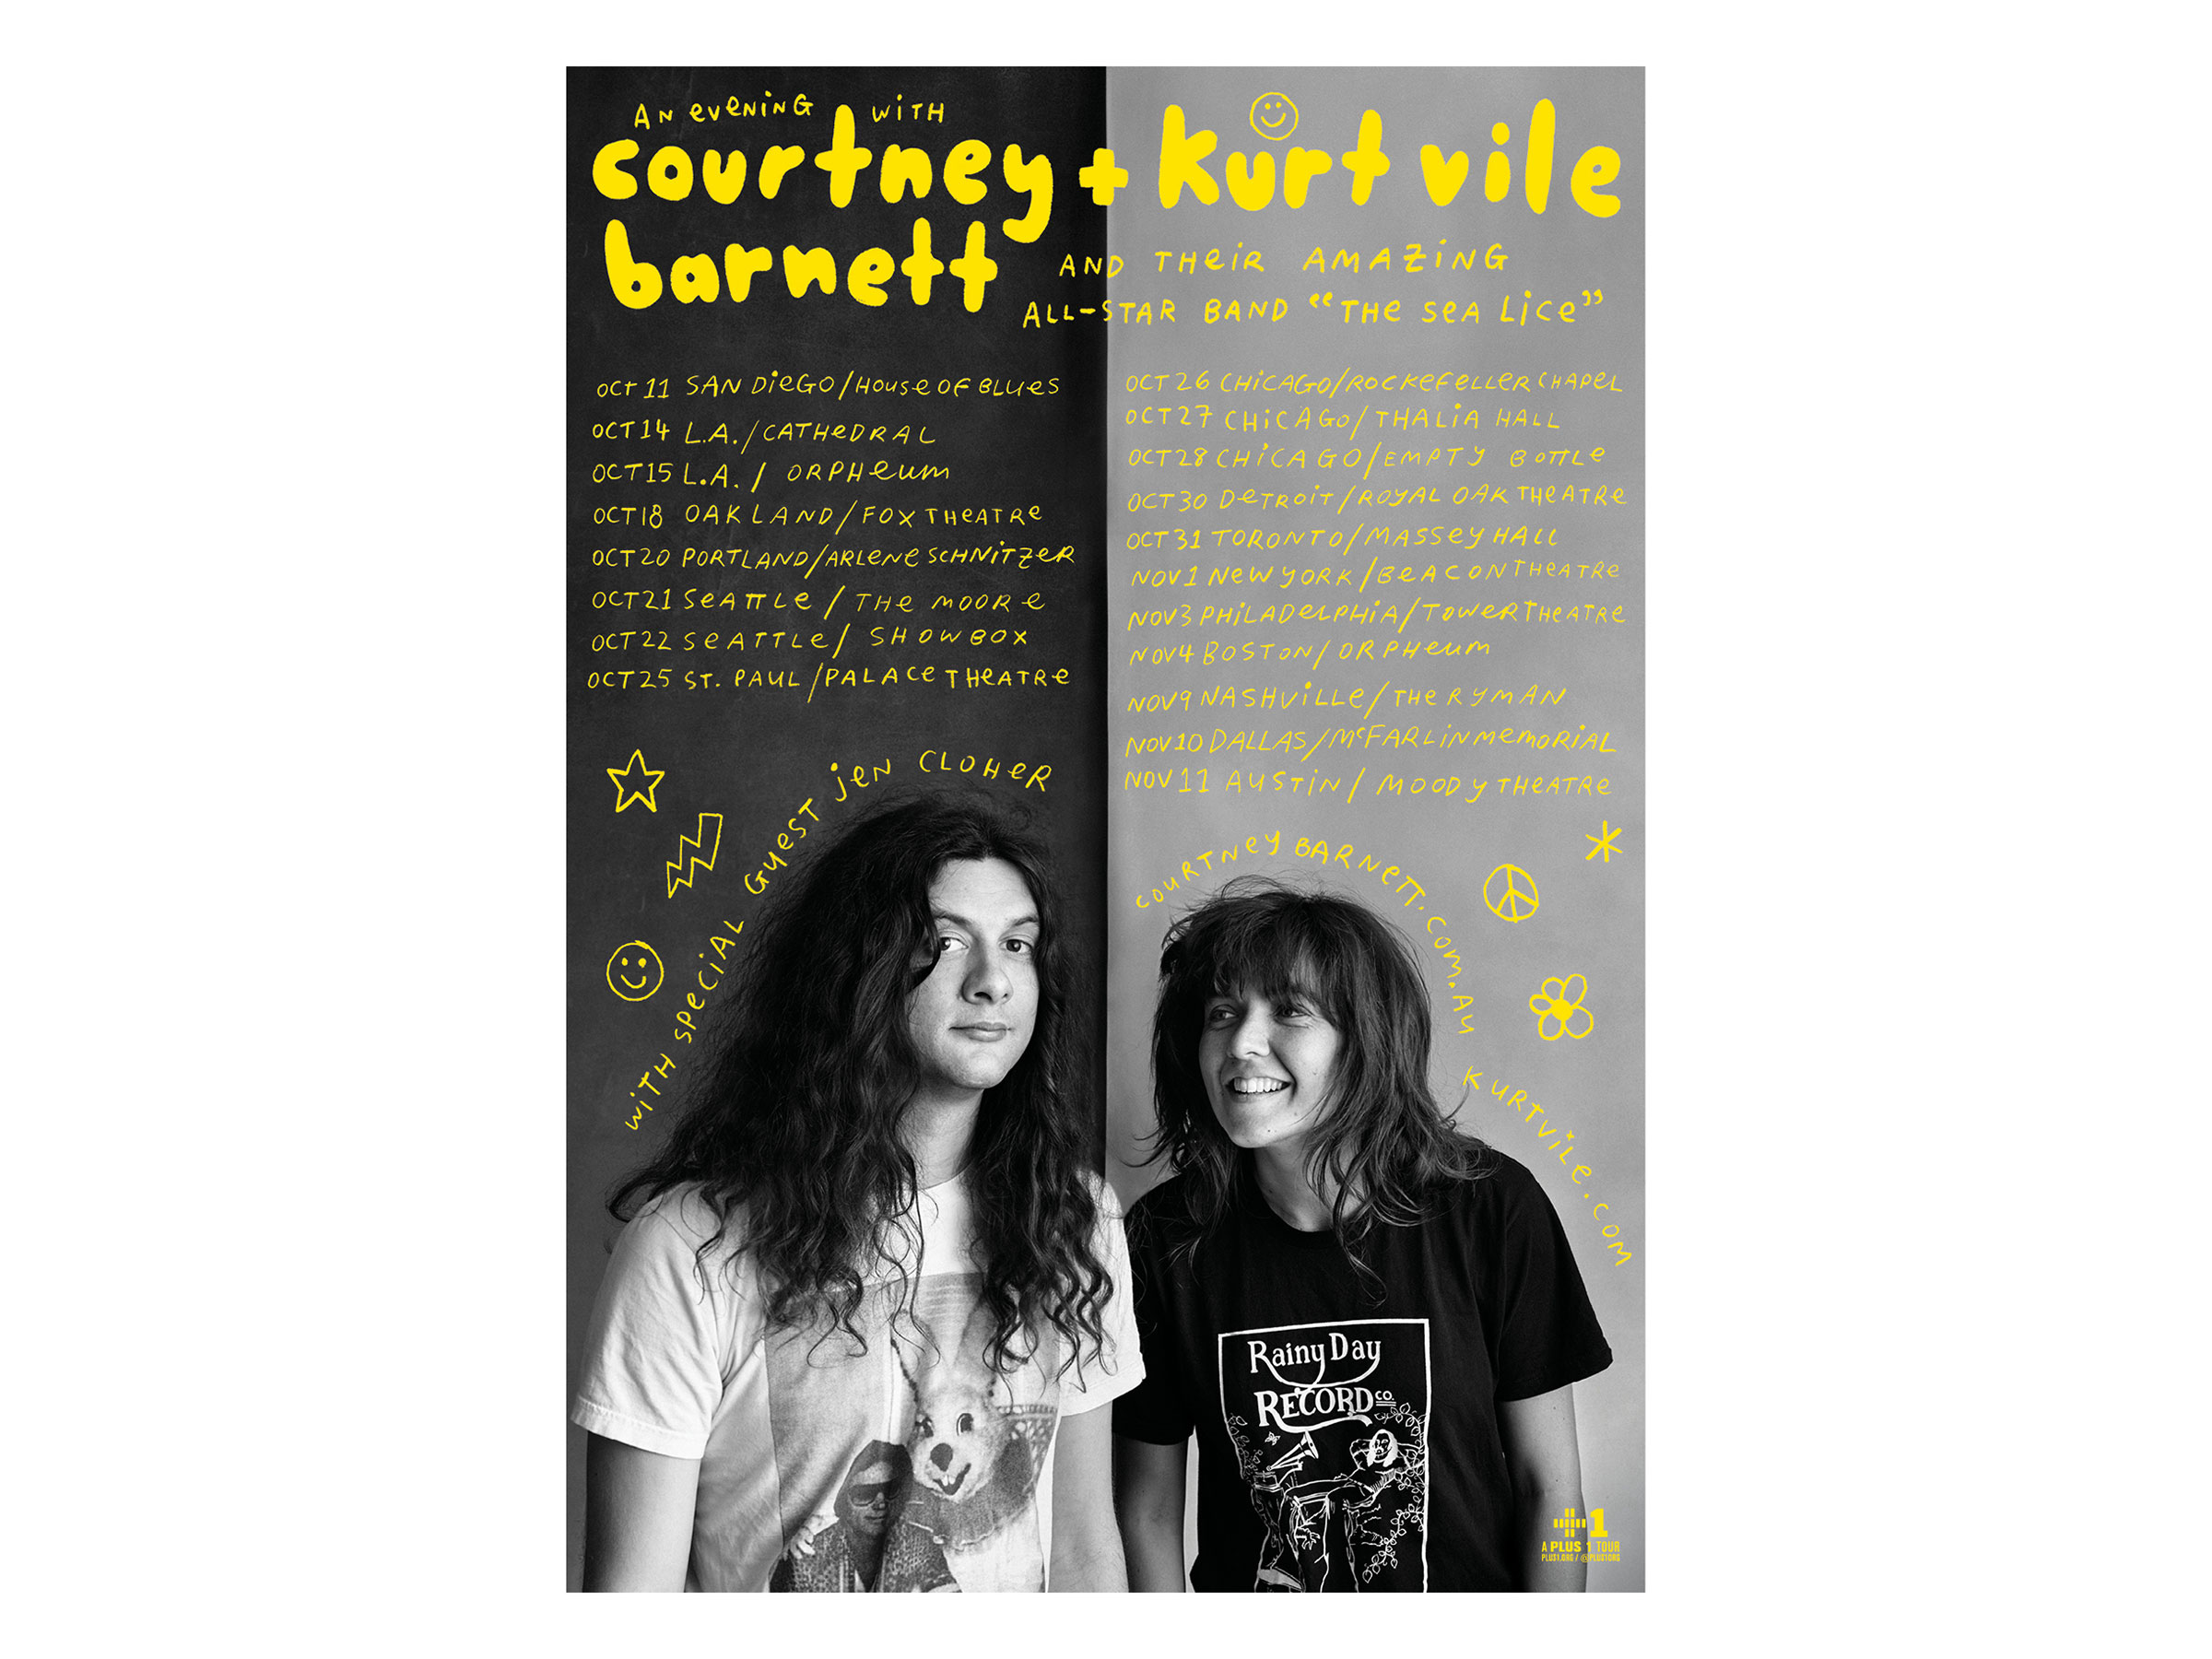 Courtney Barnett And Kurt Vile Never Now 0854